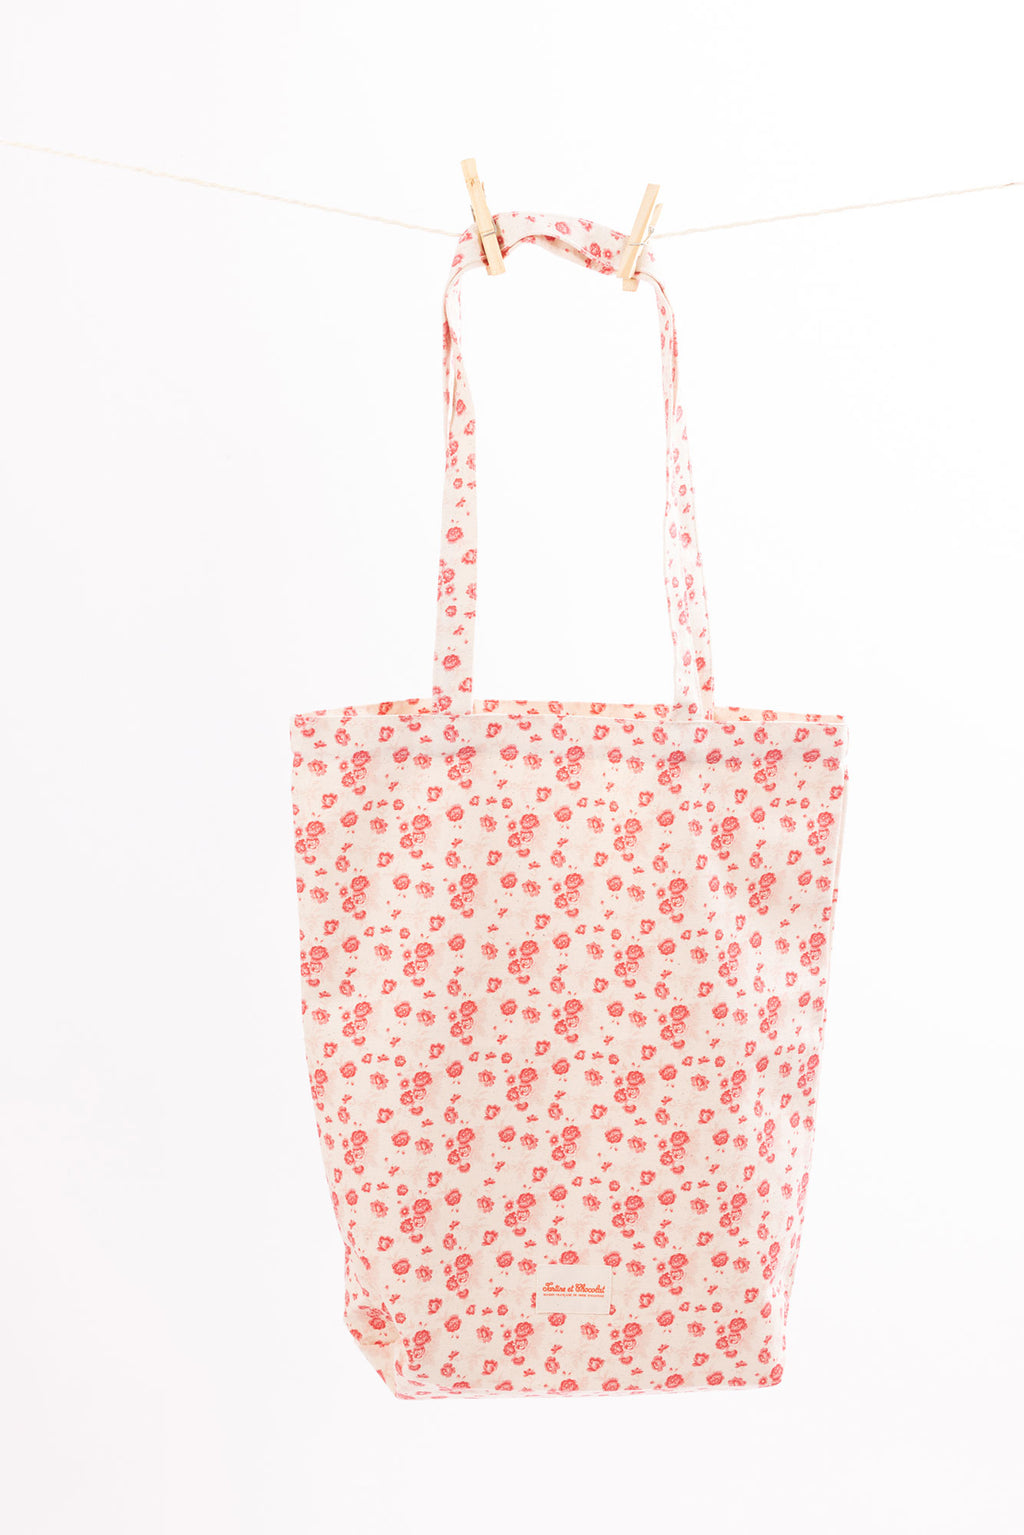 Tote bag - flowery summer 24